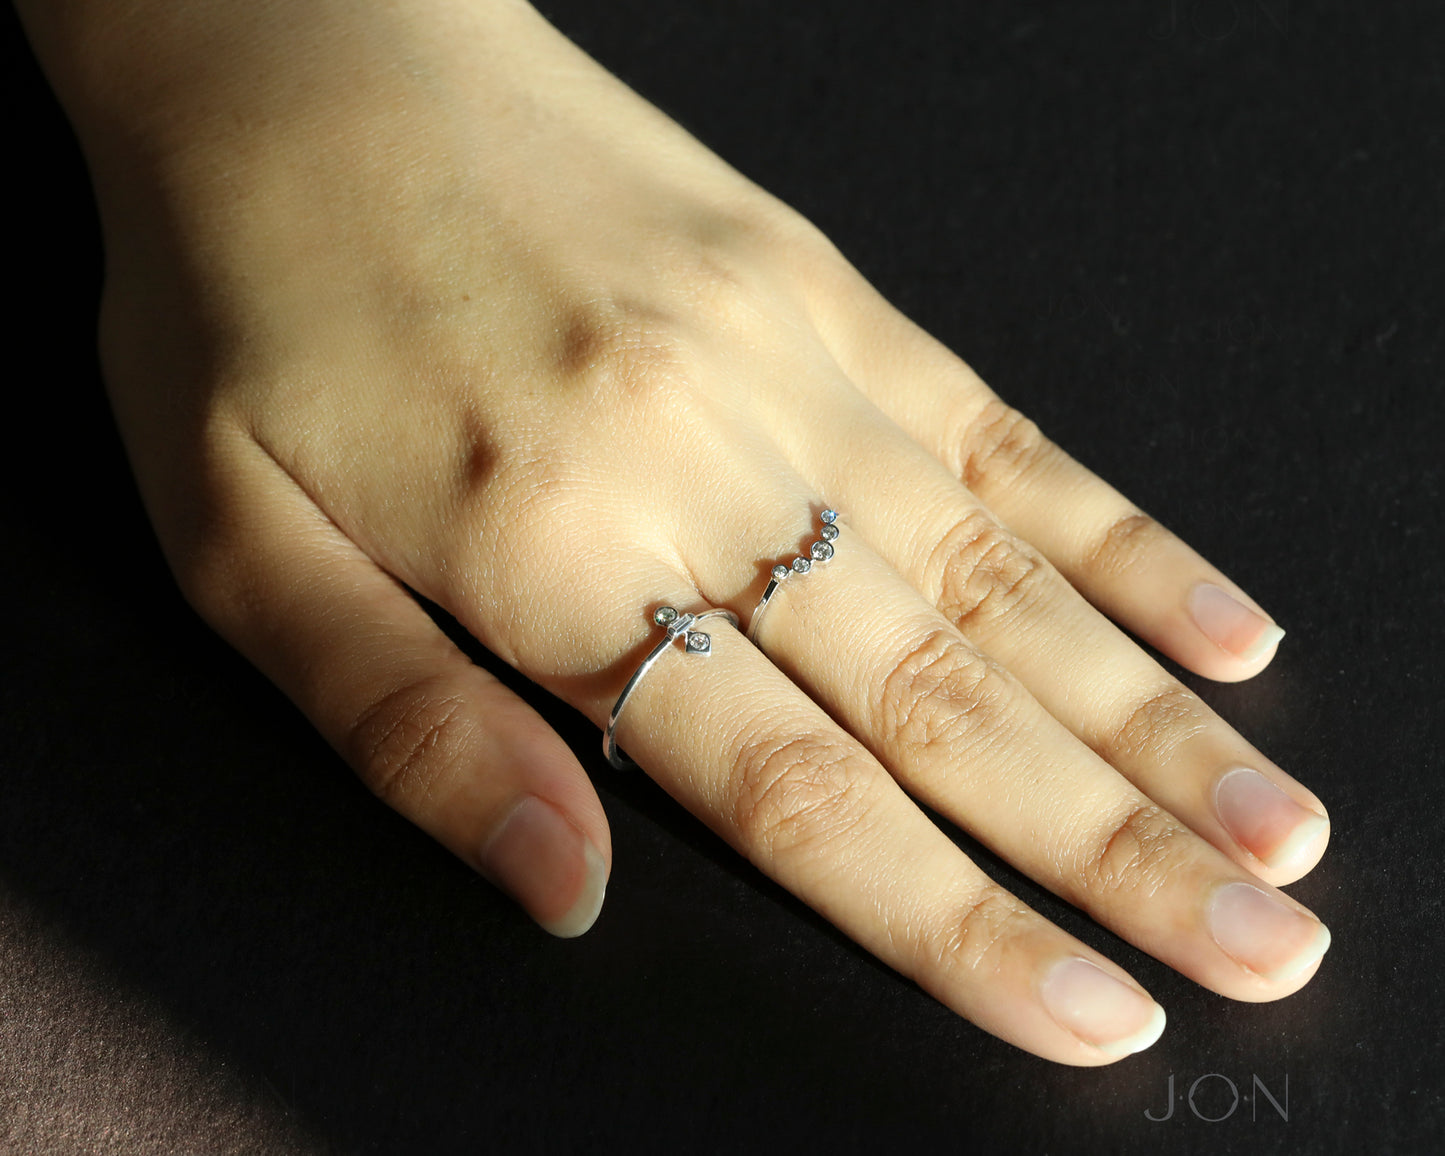 14K Gold 0.08 Ct. Genuine Diamonds Wedding Ring Fine Jewelry Size- 3 to 8 US